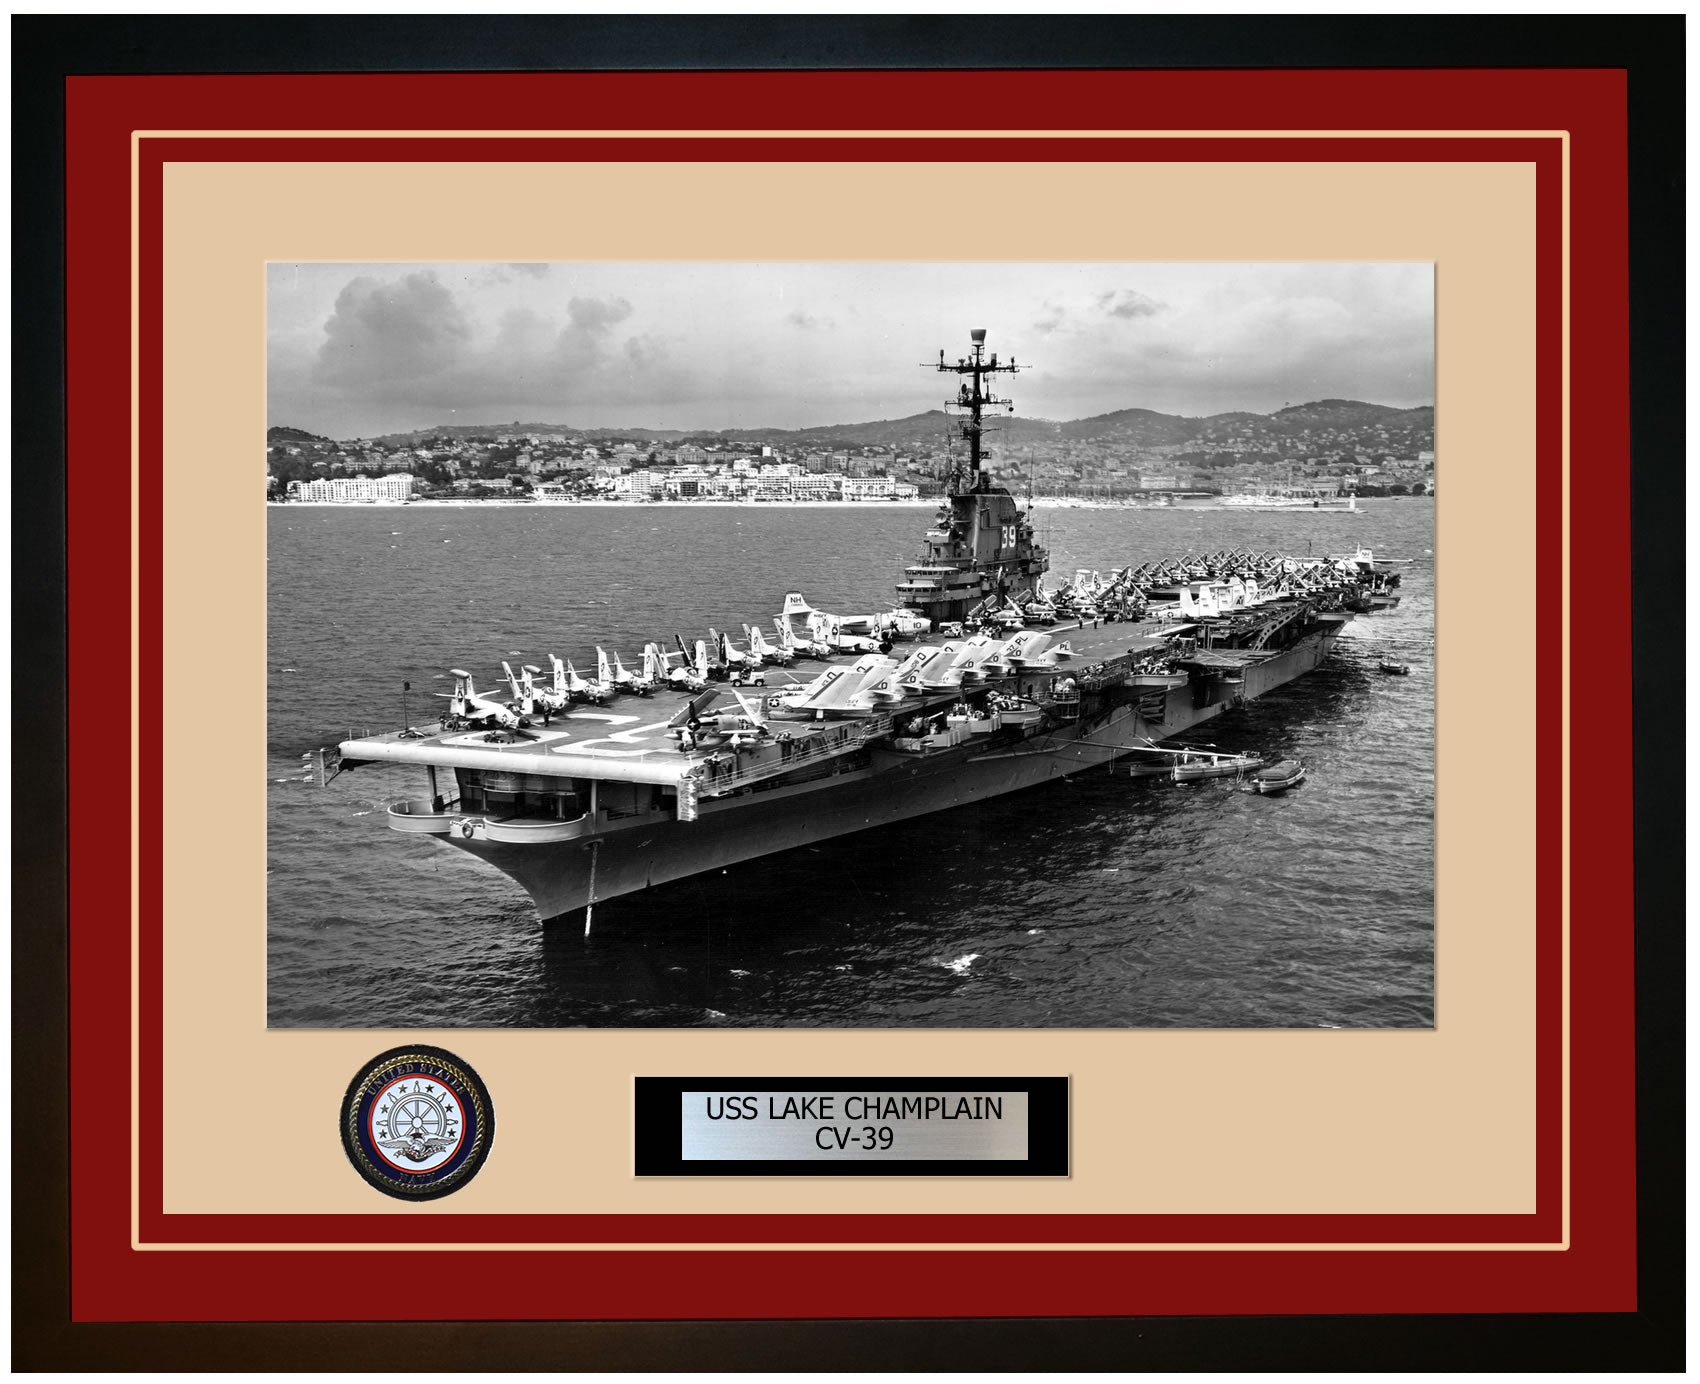 USS LAKE CHAMPLAIN CV-39 Framed Navy Ship Photo Burgundy